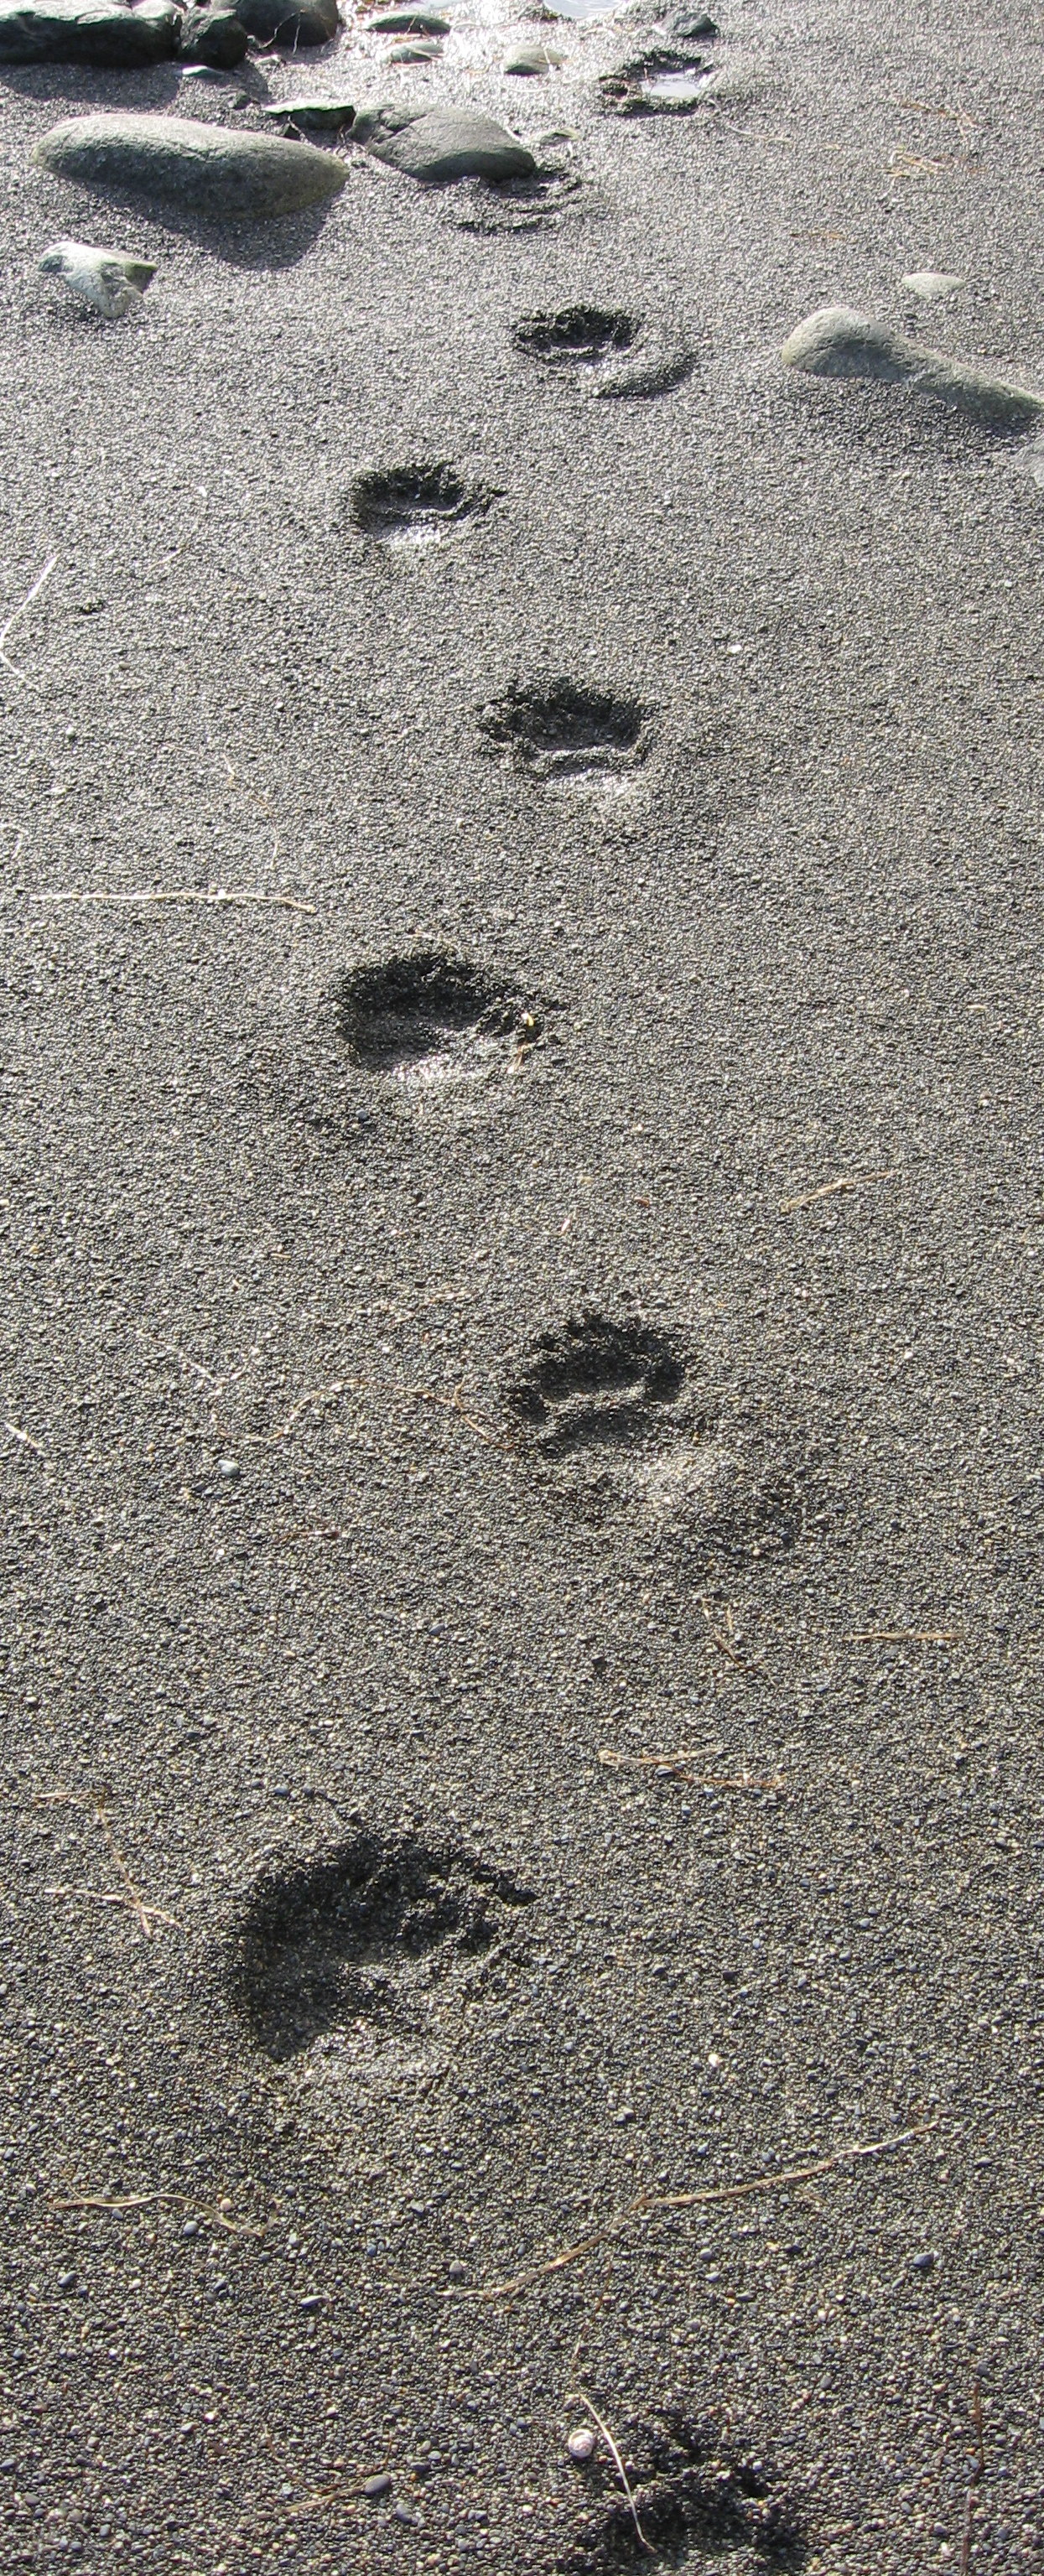 Black bear tracks